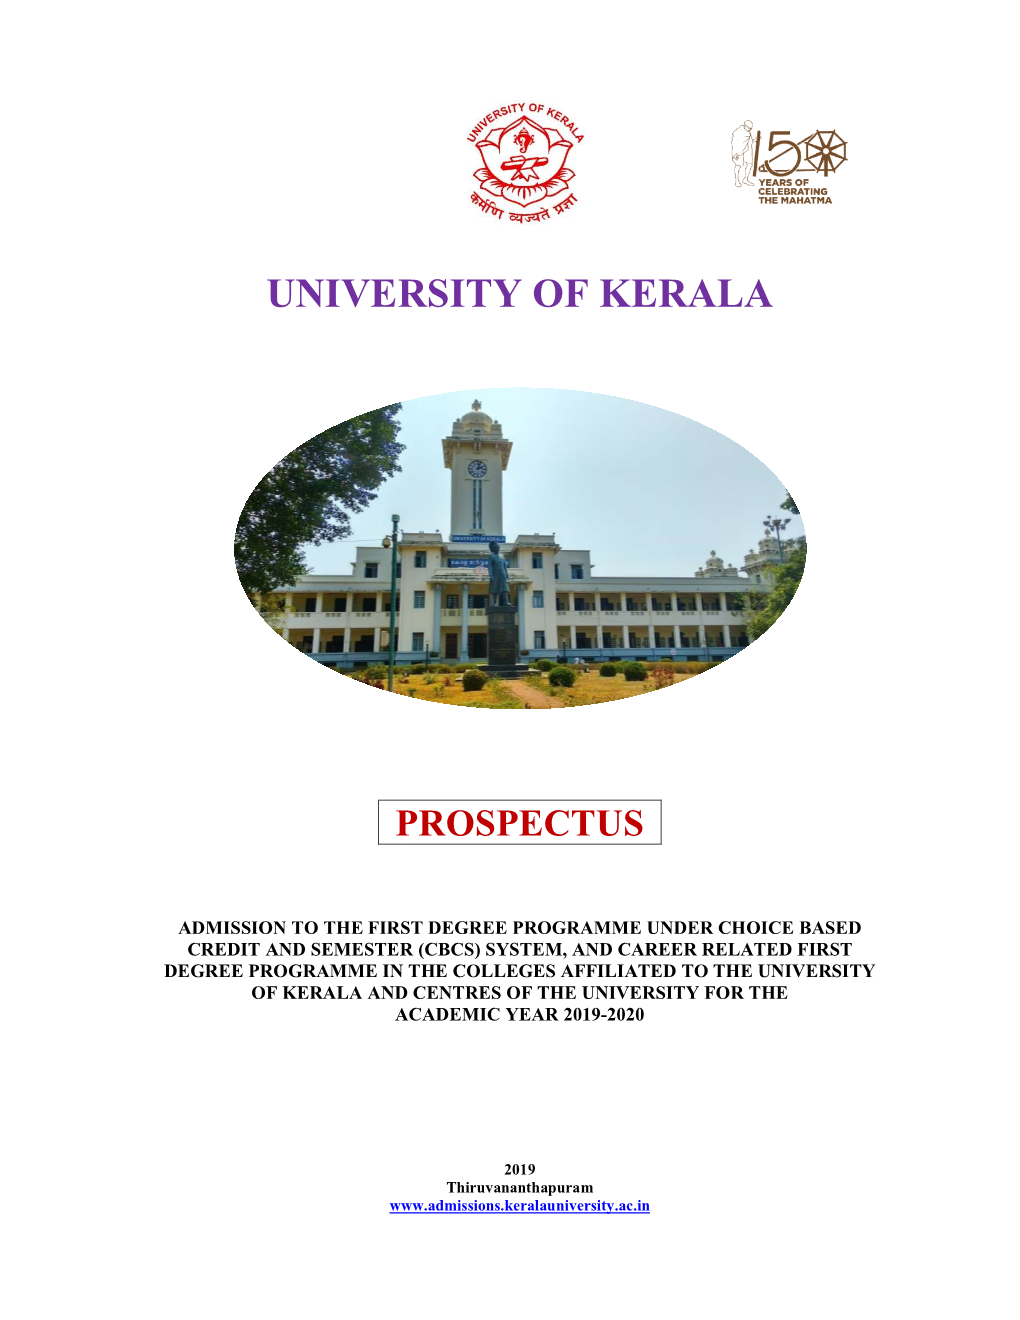 University of K University of Kerala F Kerala